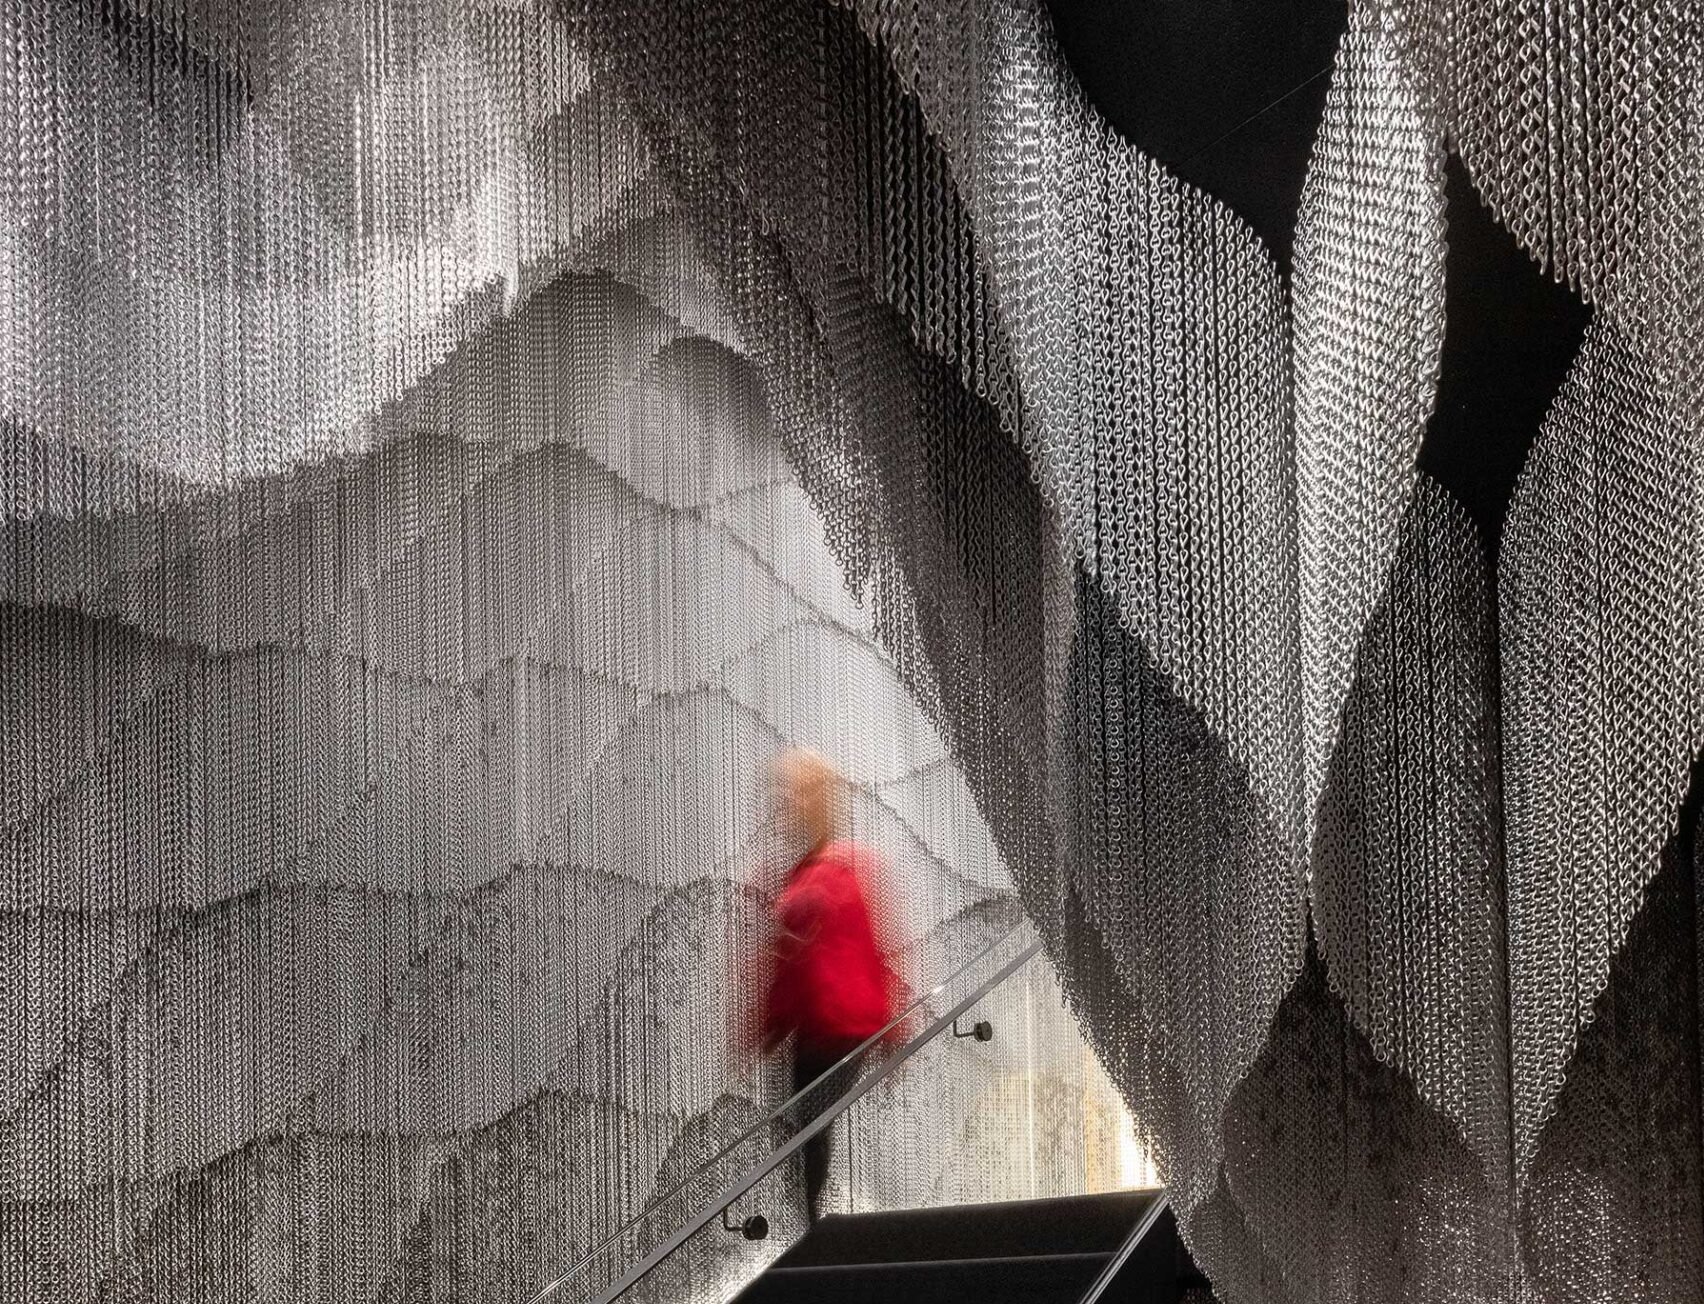 El arquitecto Kengo Kuma invade la Casa Batlló con una instalación de cortinas metálicas